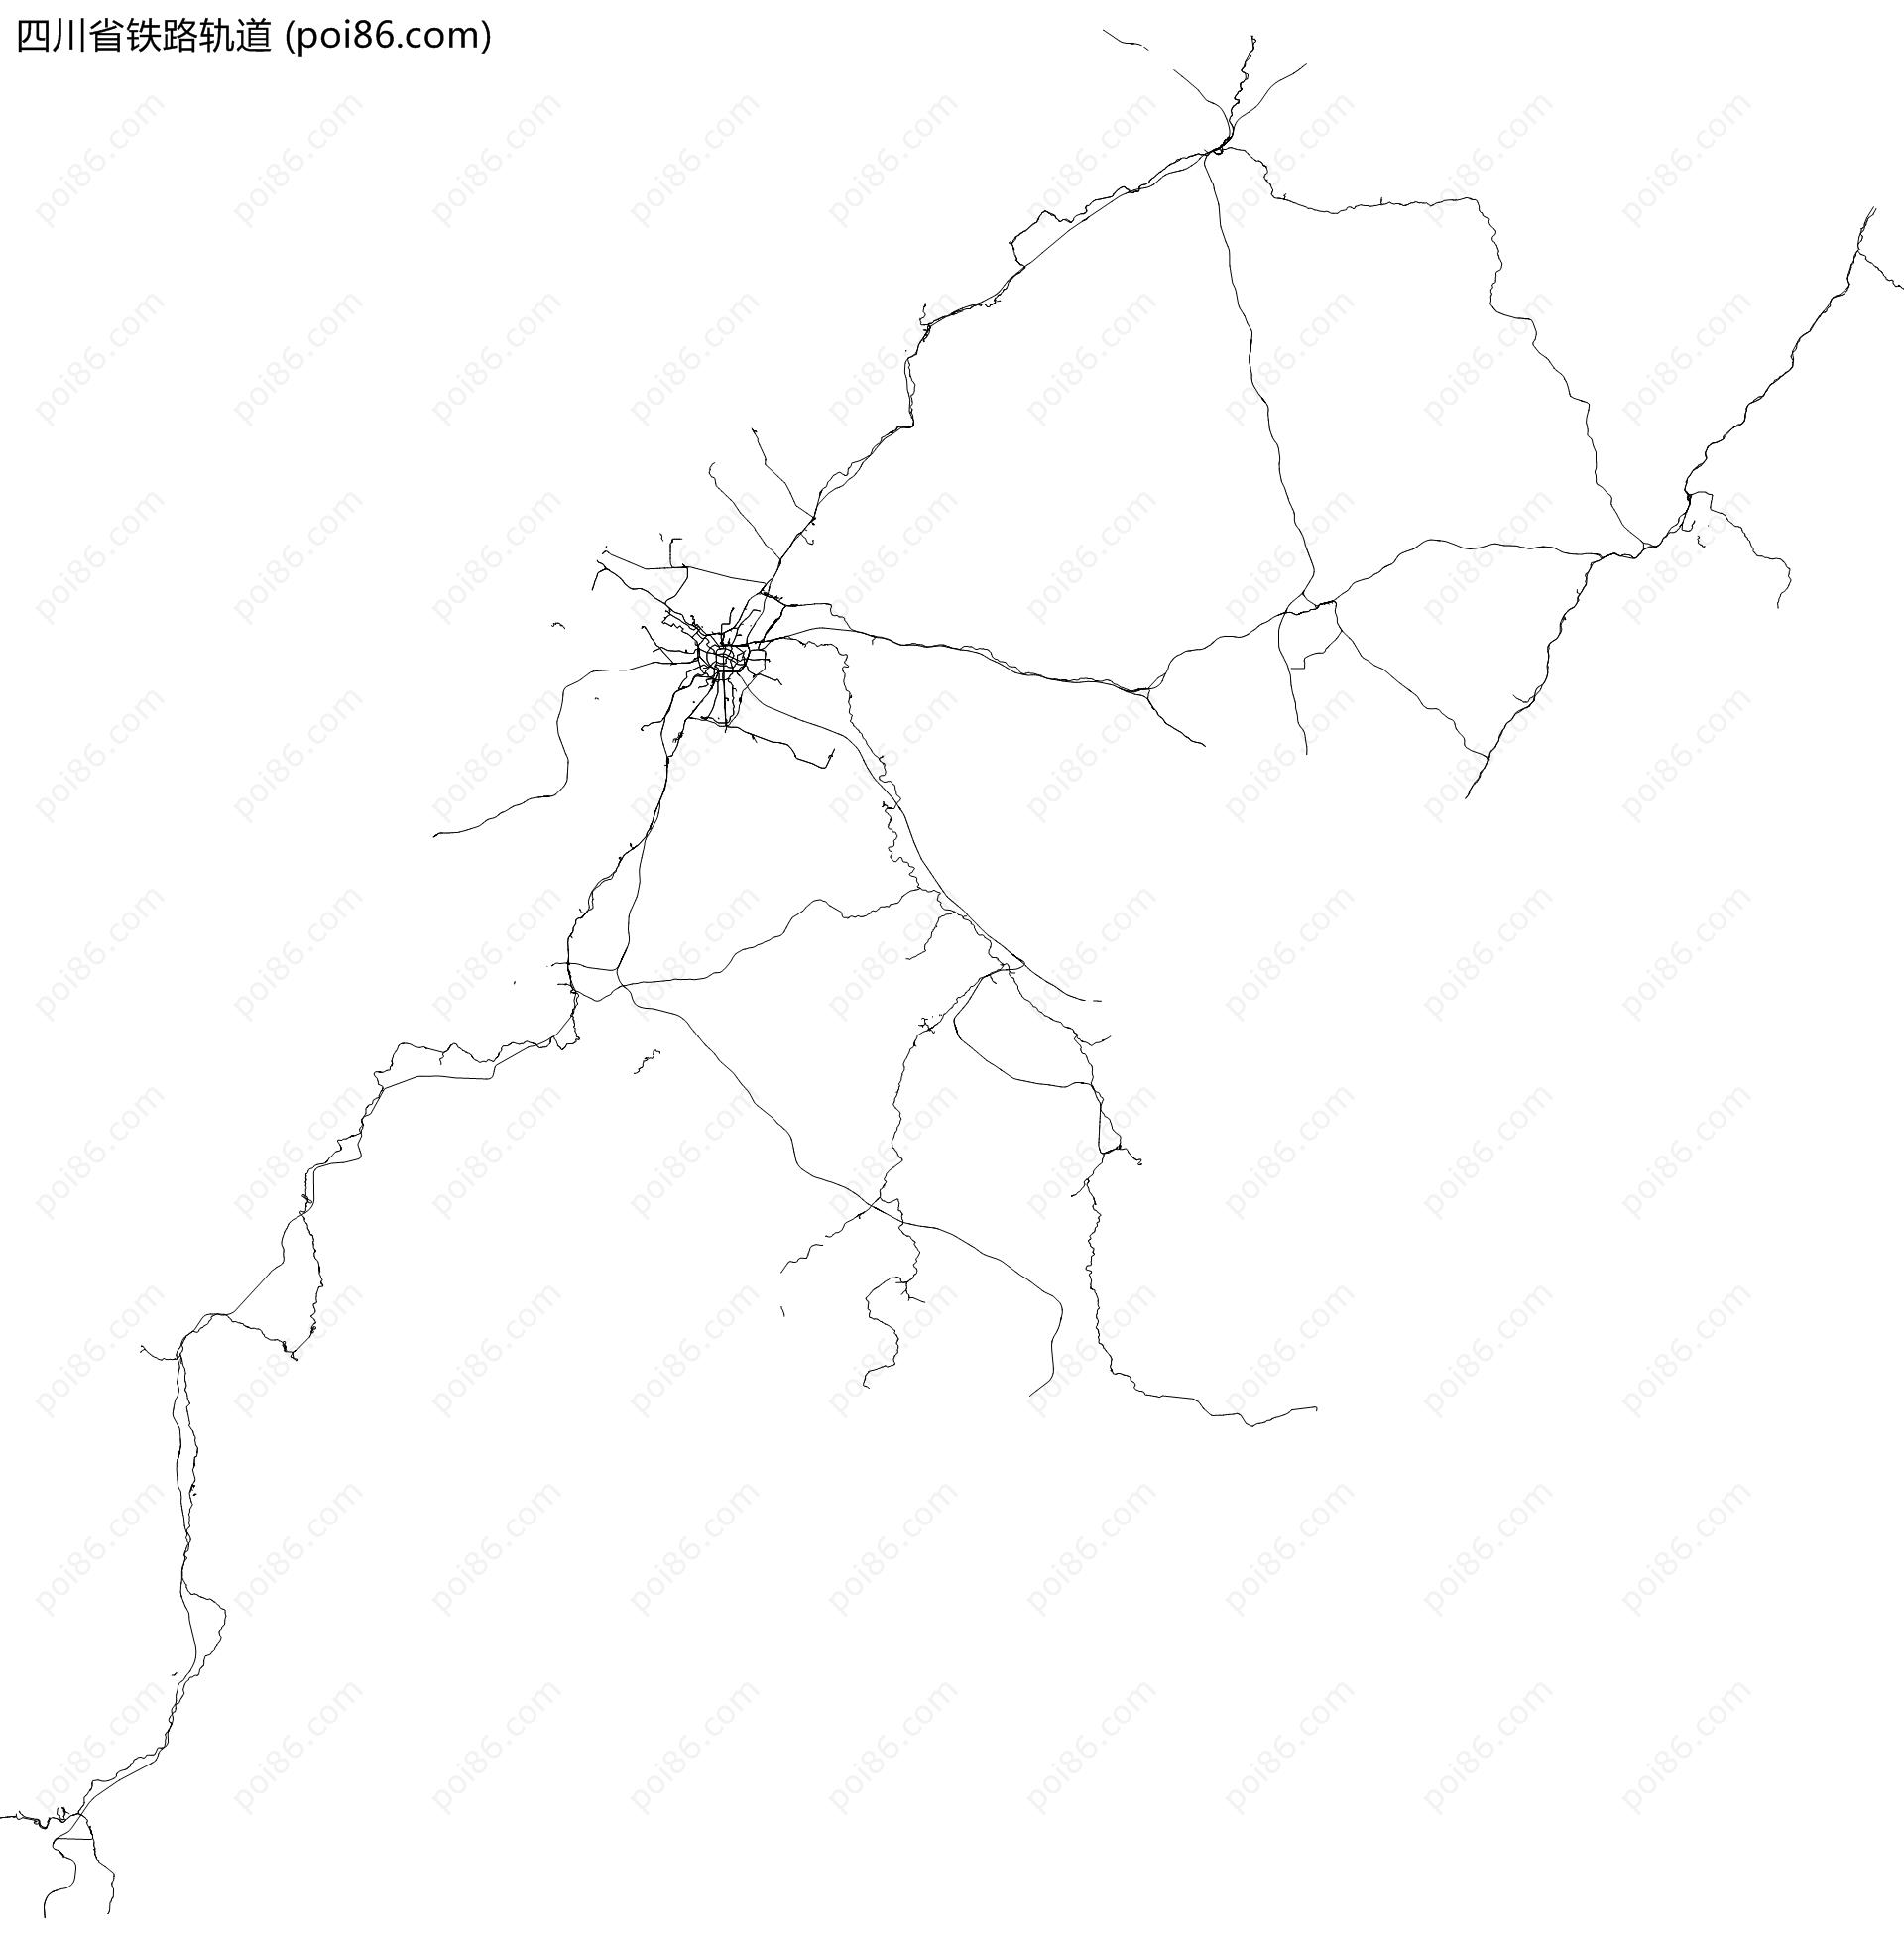 四川省铁路轨道地图